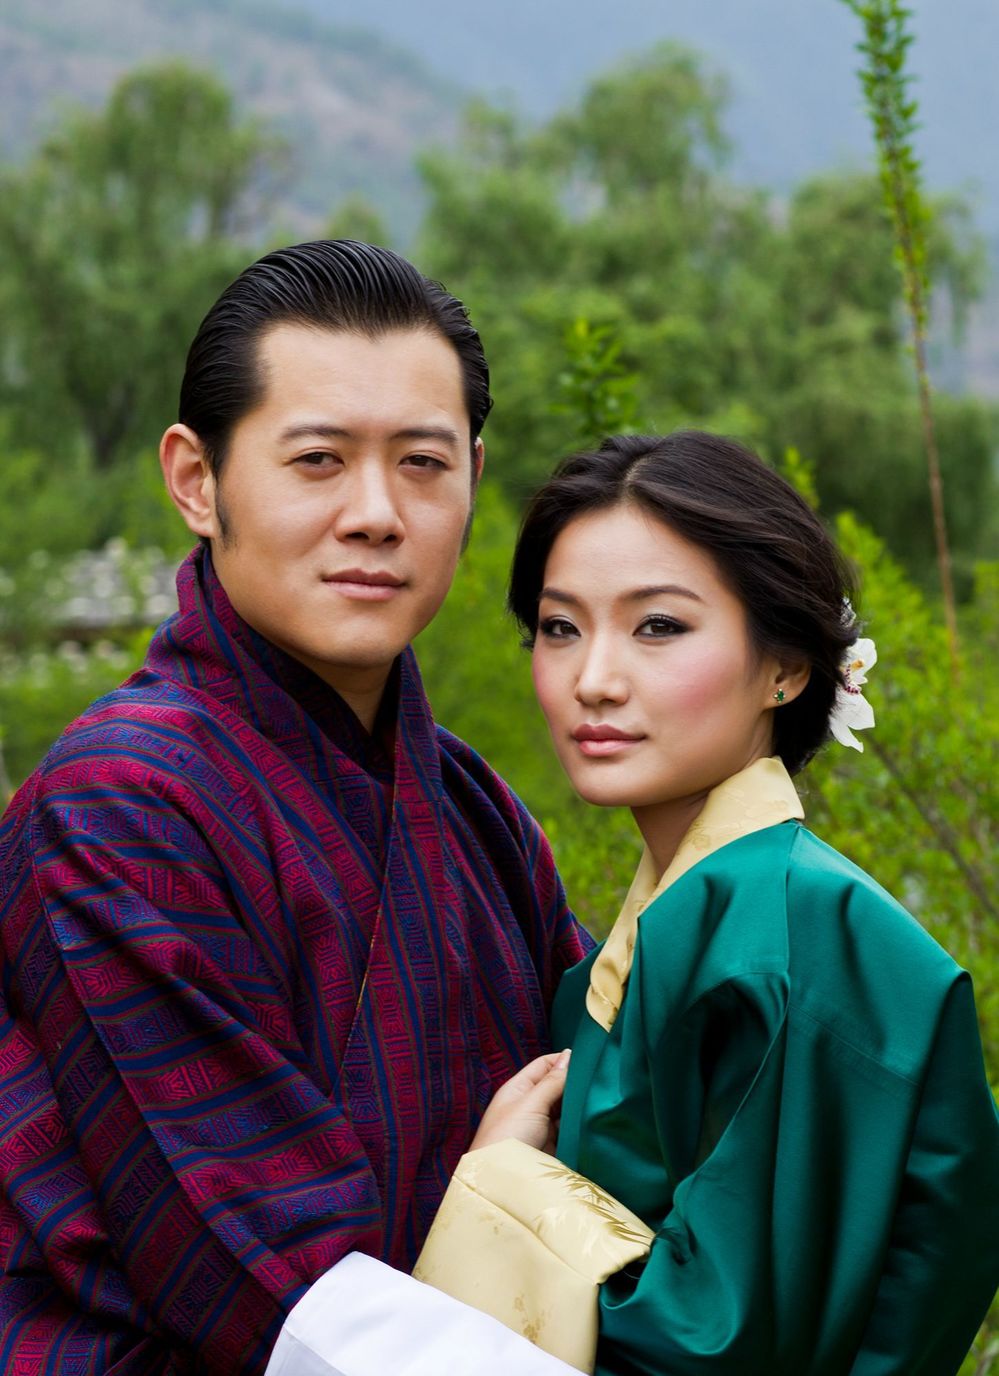  
Nét xinh đẹp, yêu kiều của Jetsun Pema khi đứng cạnh chồng - Quốc vương Bhutan. (Ảnh: FB)